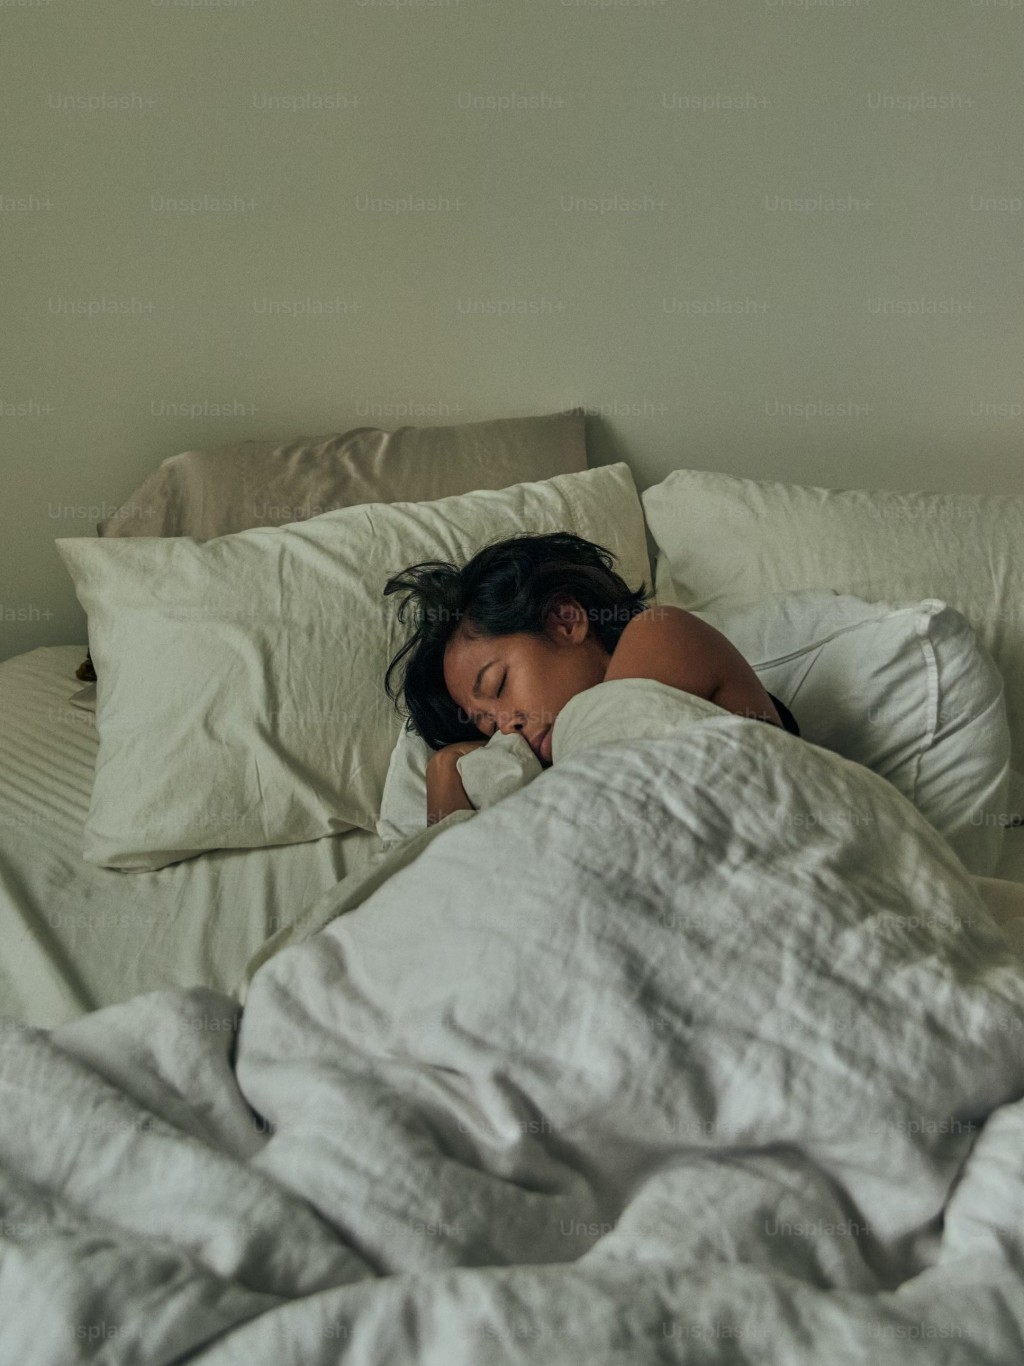 专家指裸睡能减轻压力和焦虑。 unsplash